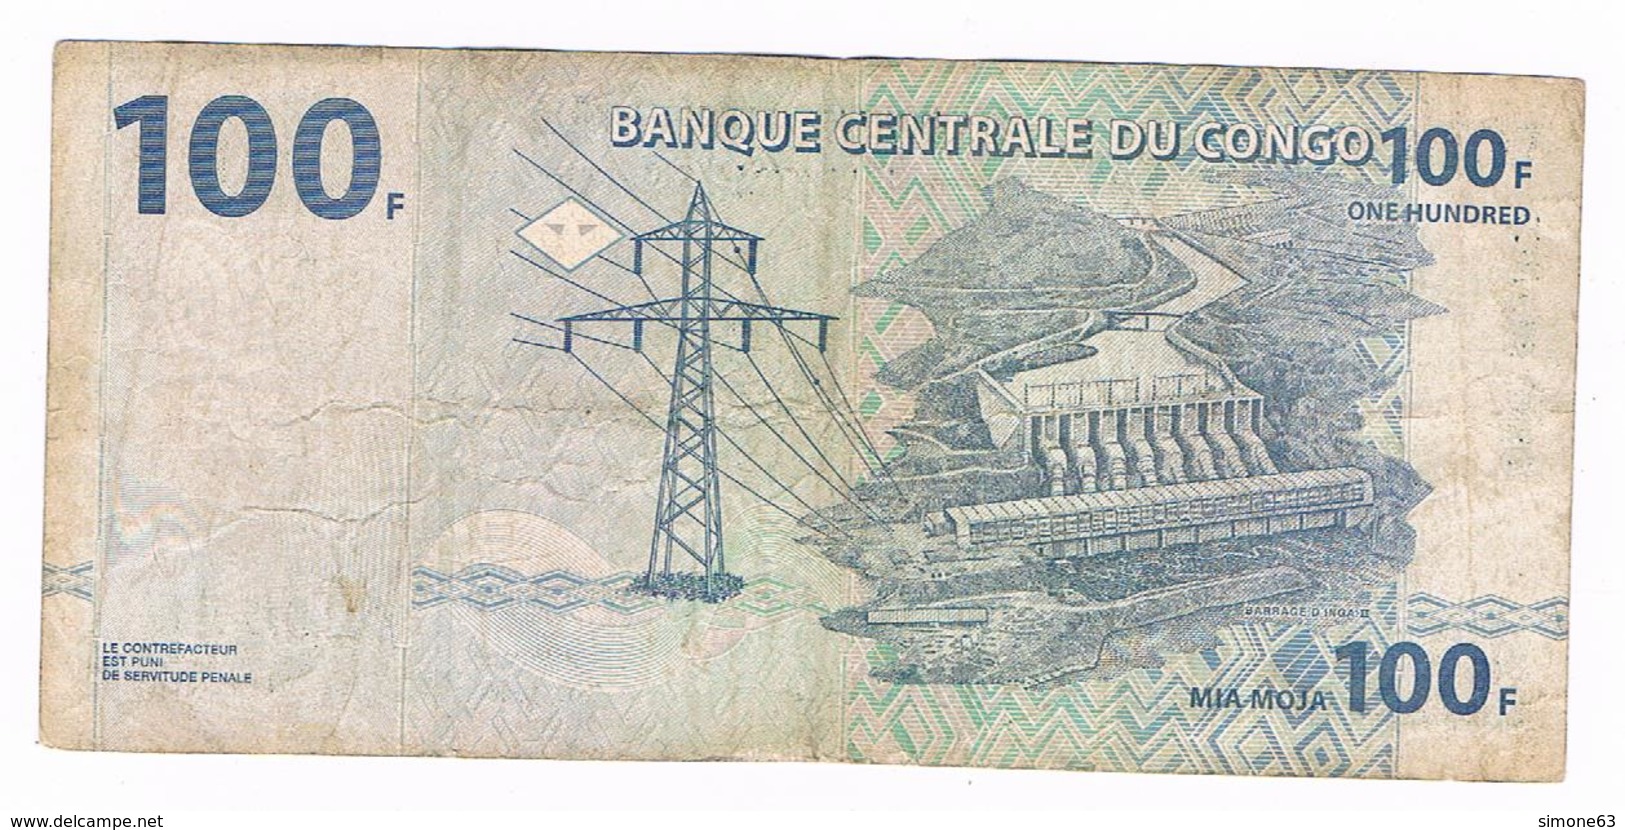 Billet  Banque Centrale Du Congo - 100 Francs - 4 01 2000 - République Démocratique Du Congo & Zaïre